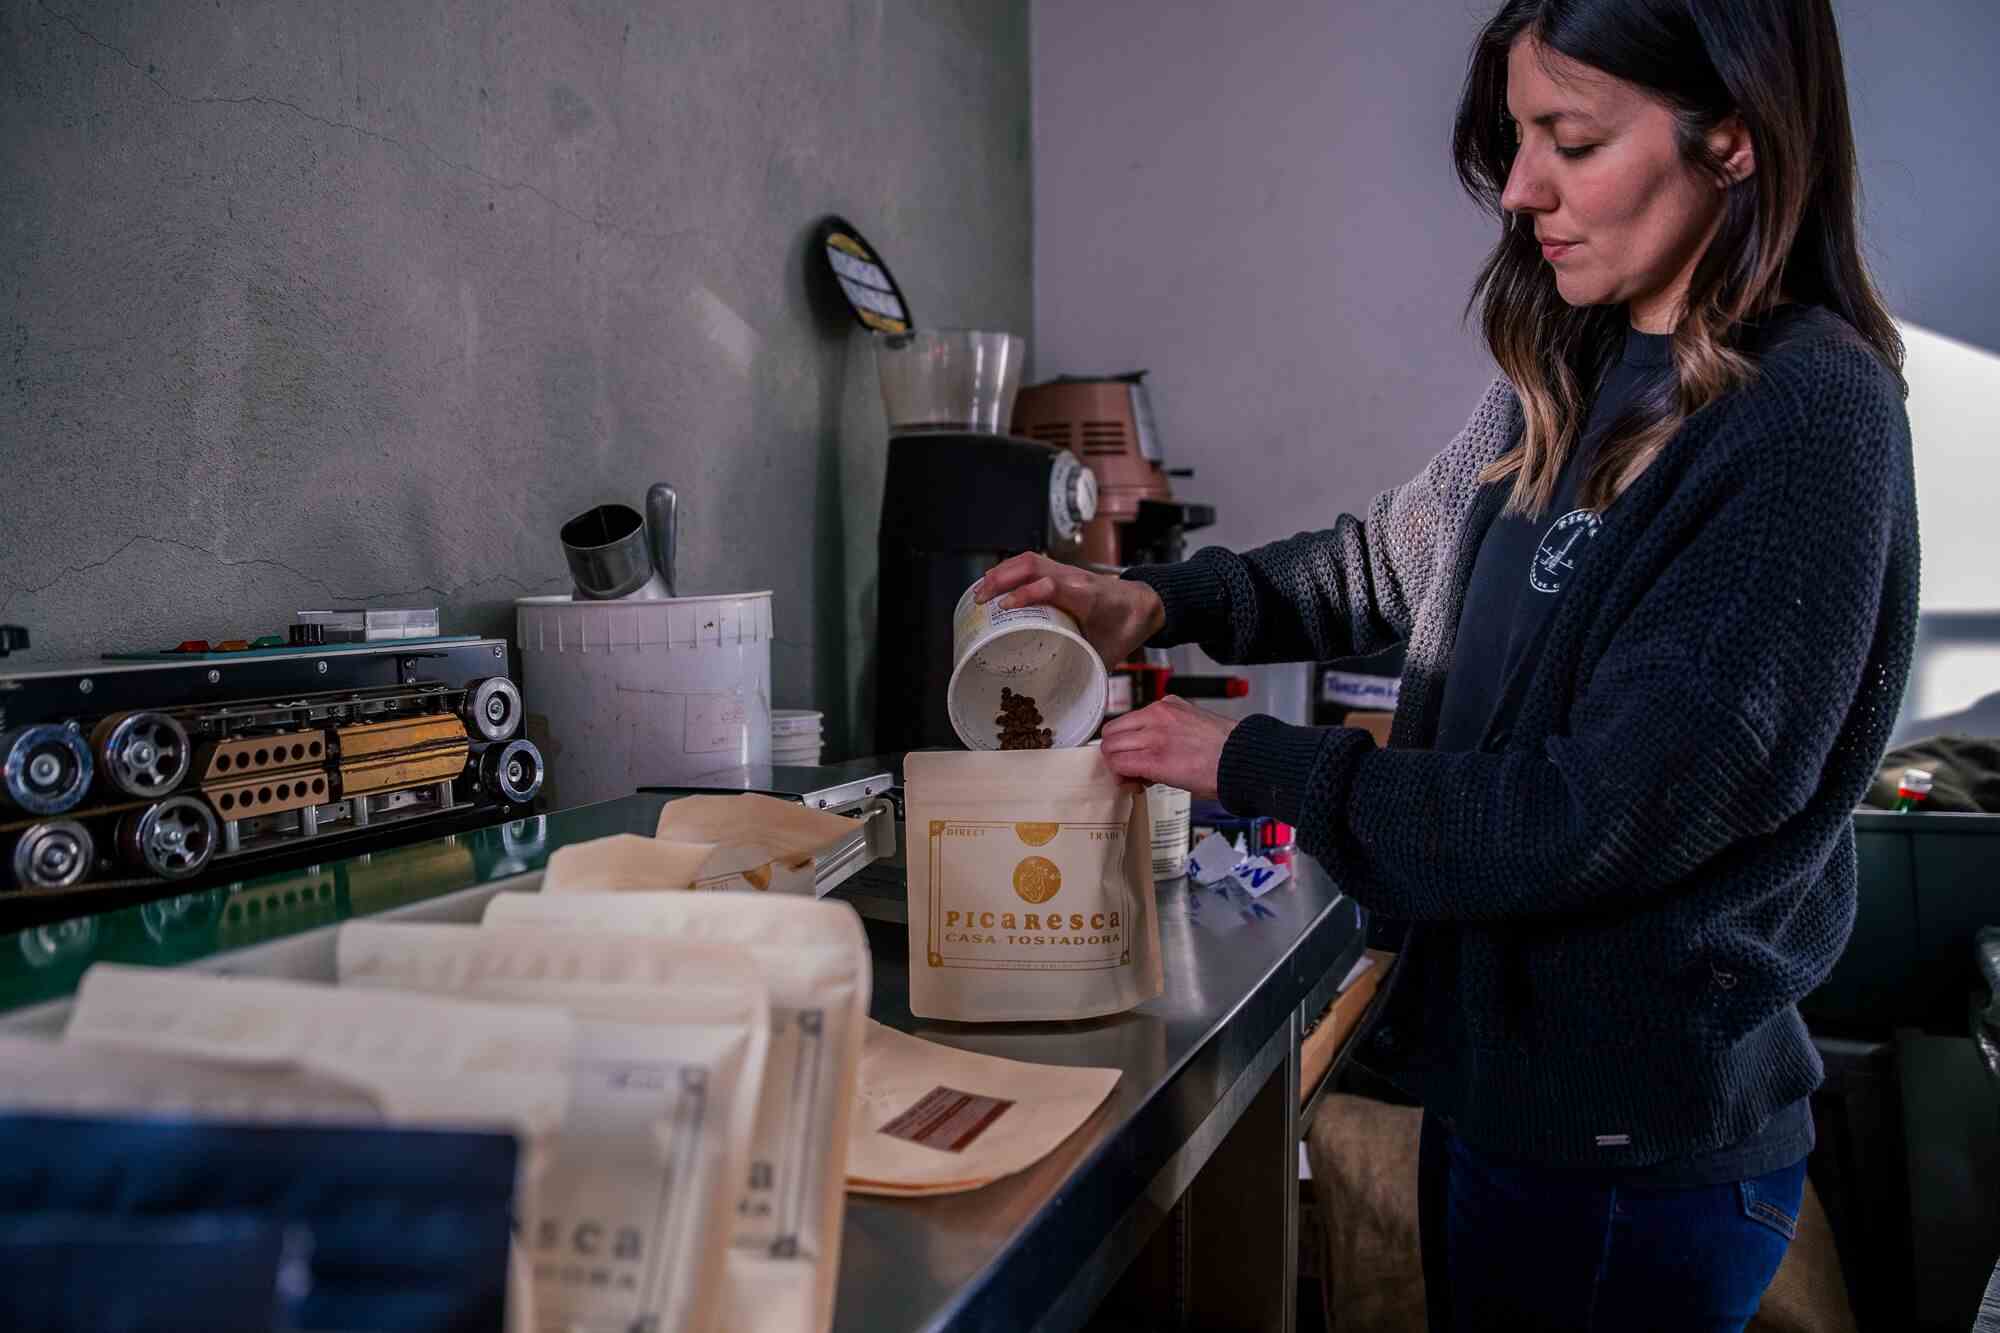 Elisa Hoyos, Mitinhaberin von Picaresca Coffee, verpackt Kaffeebohnen bei Cognoscenti in der Innenstadt von Los Angeles.